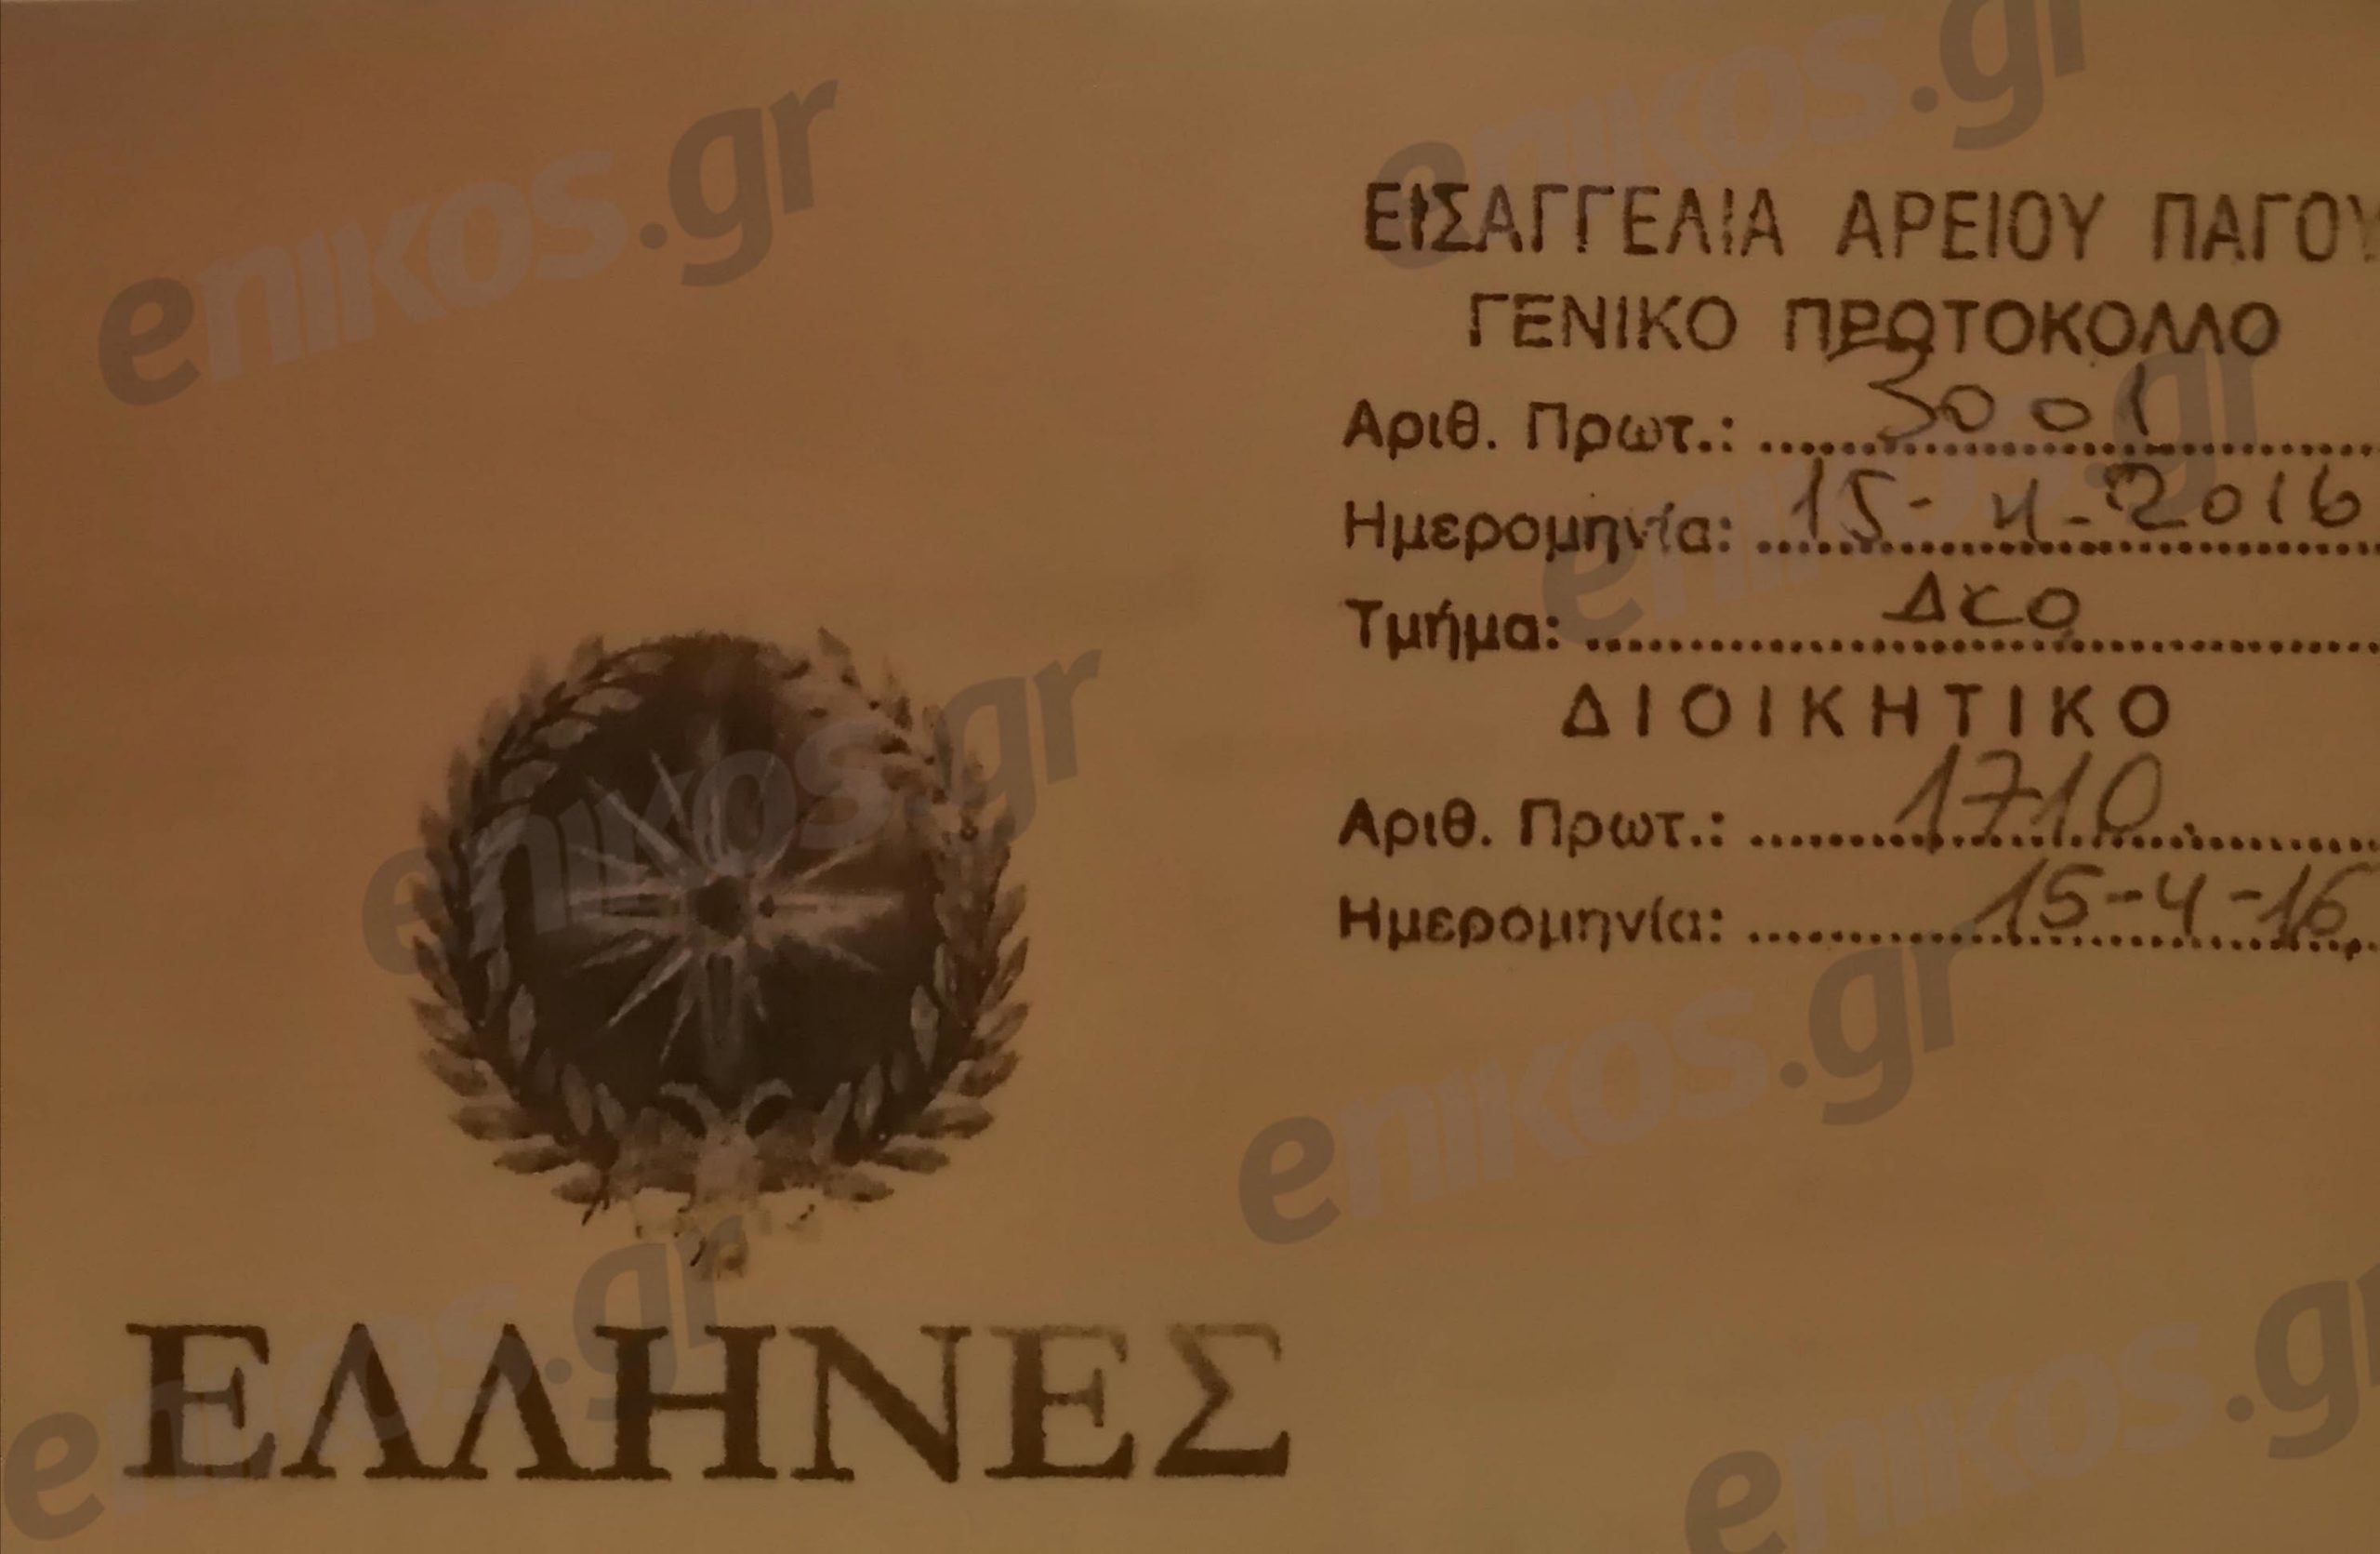 Το πρωτόκολλο του 2016 για το κόμμα "Έλληνες"